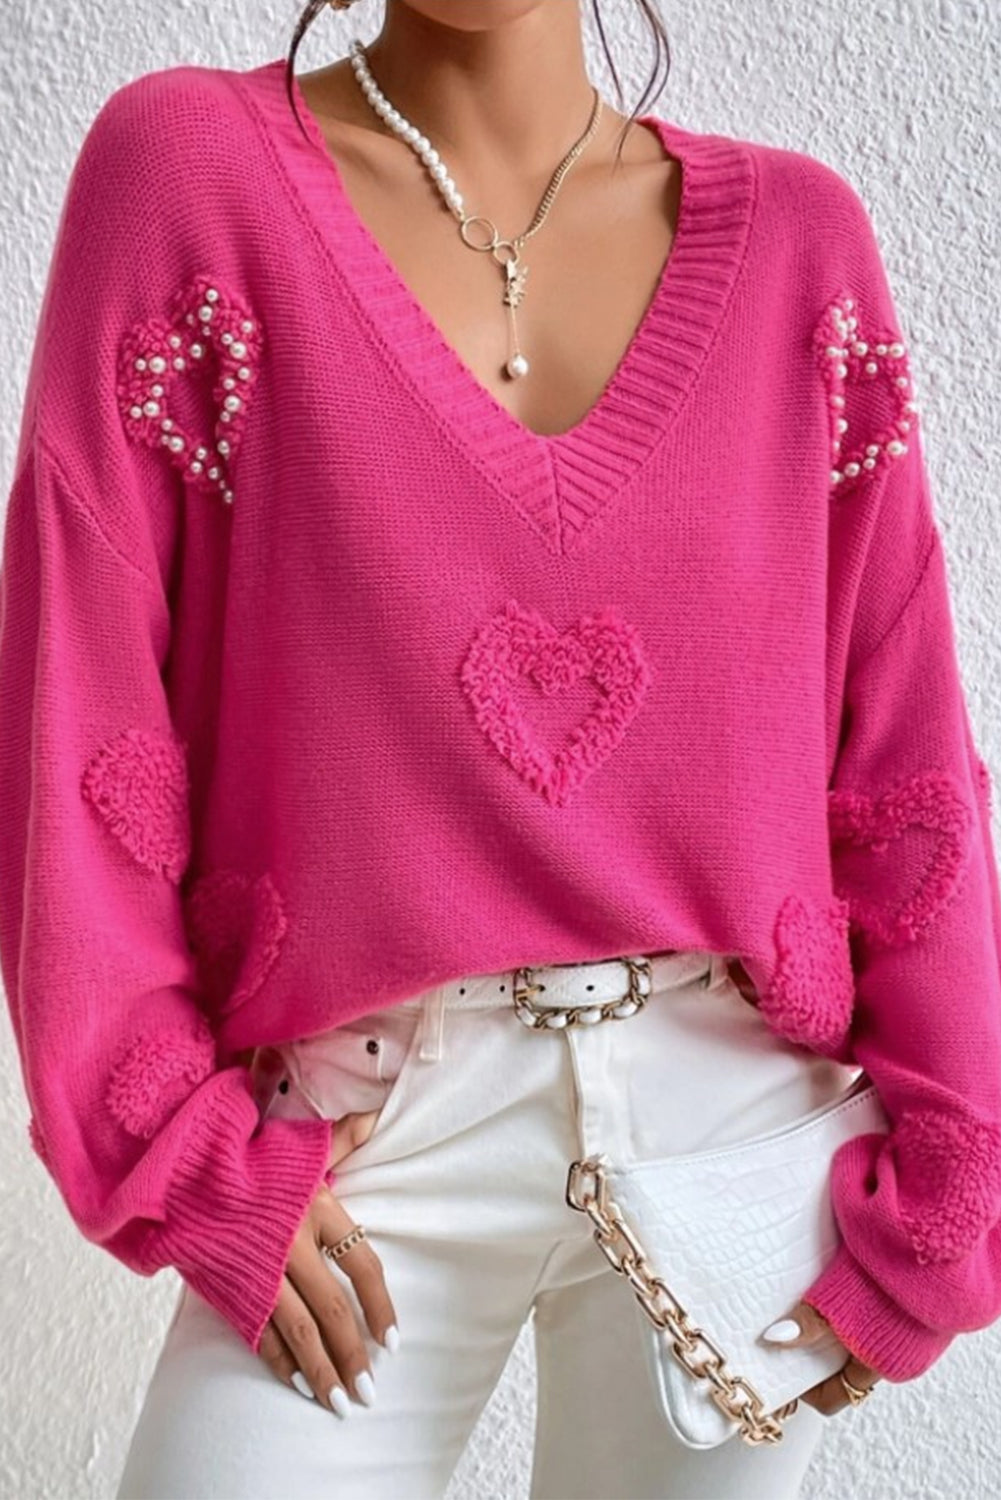 Rosaroter, mit Perlen verzierter Fuzzy-Herzen-Pullover mit V-Ausschnitt